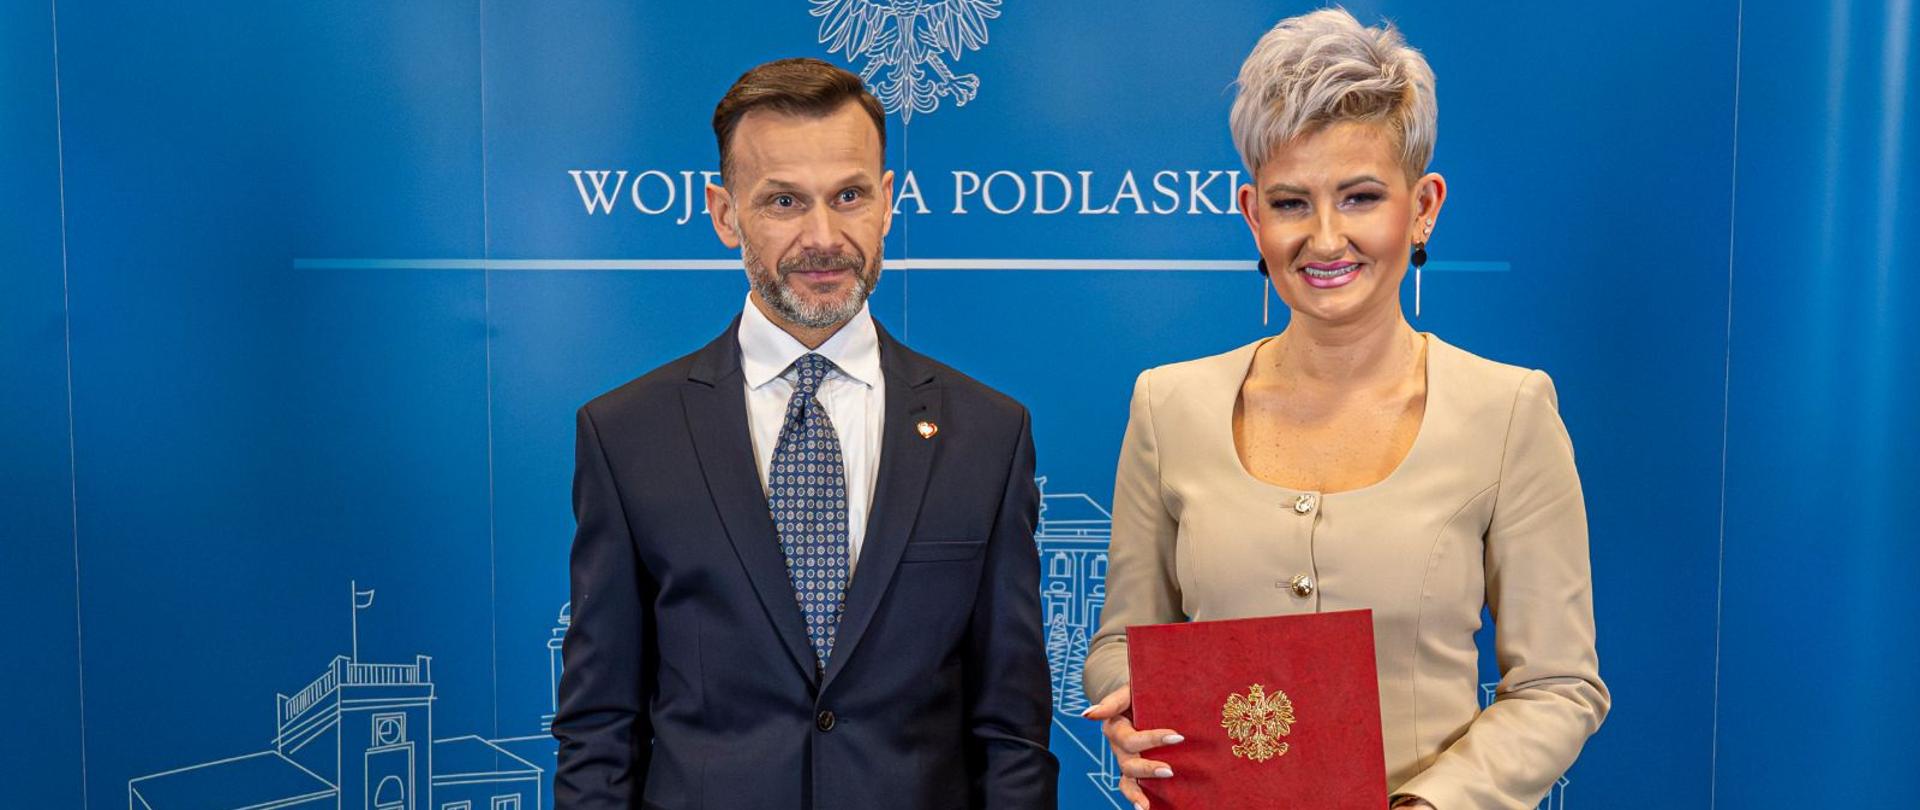 Mężczyzna w garniturze stoi obok kobiety, która w ręku trzyma dokument z godłem Polski. W tle baner z napisem Wojewoda Podlaski.